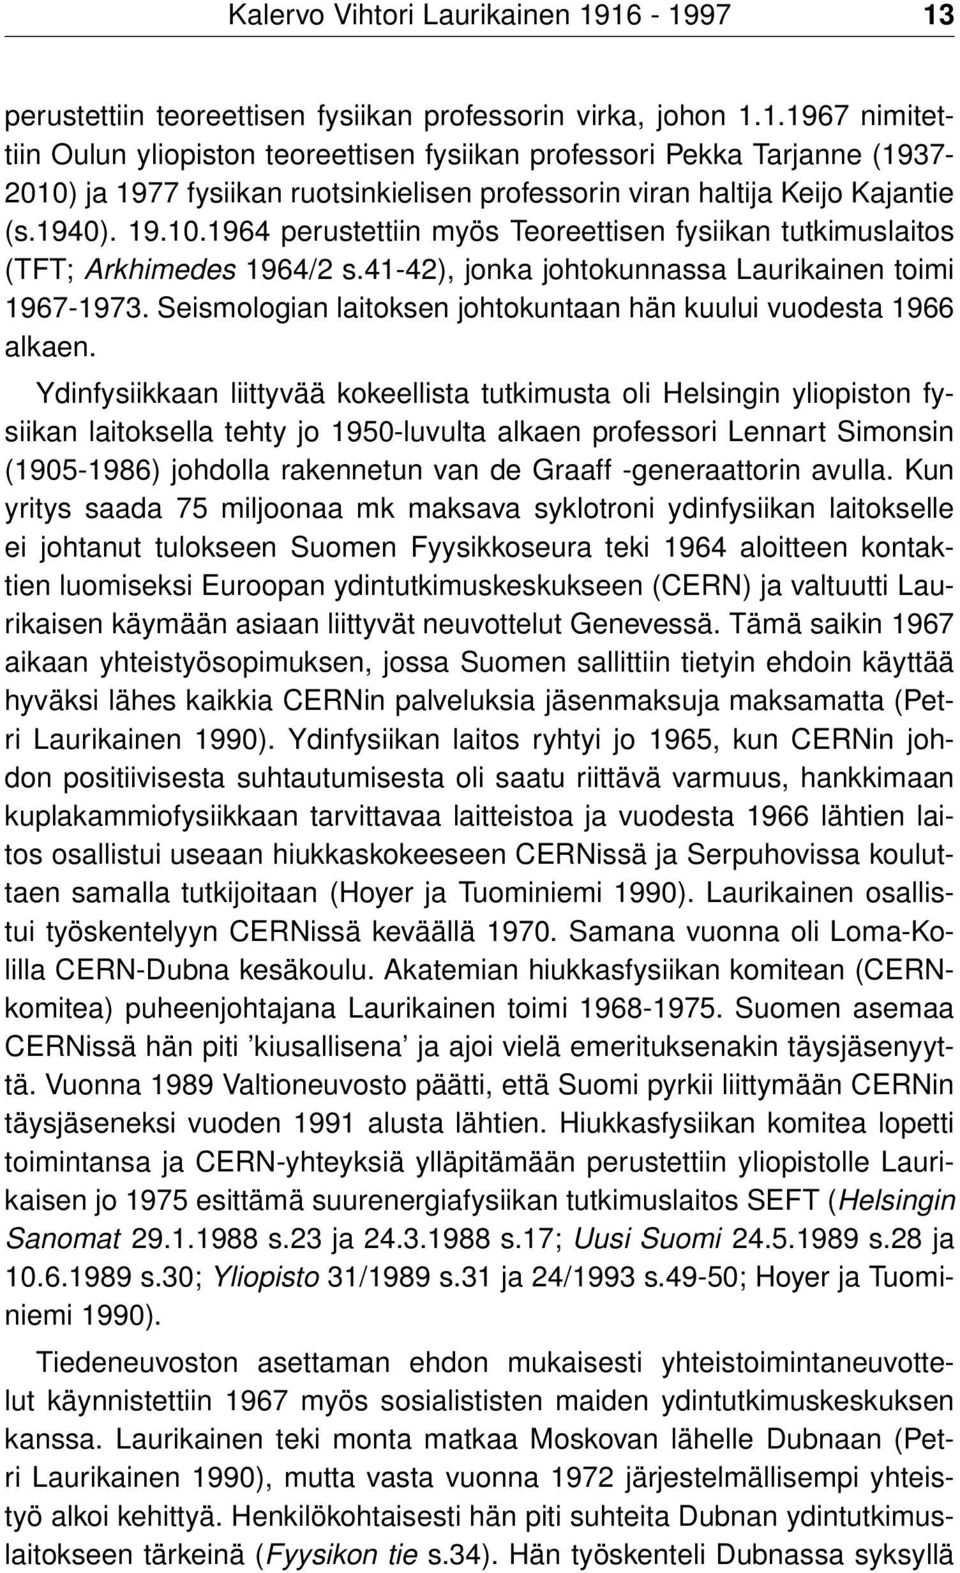 1940). 19.10.1964 perustettiin myös Teoreettisen fysiikan tutkimuslaitos (TFT; Arkhimedes 1964/2 s.41-42), jonka johtokunnassa Laurikainen toimi 1967-1973.